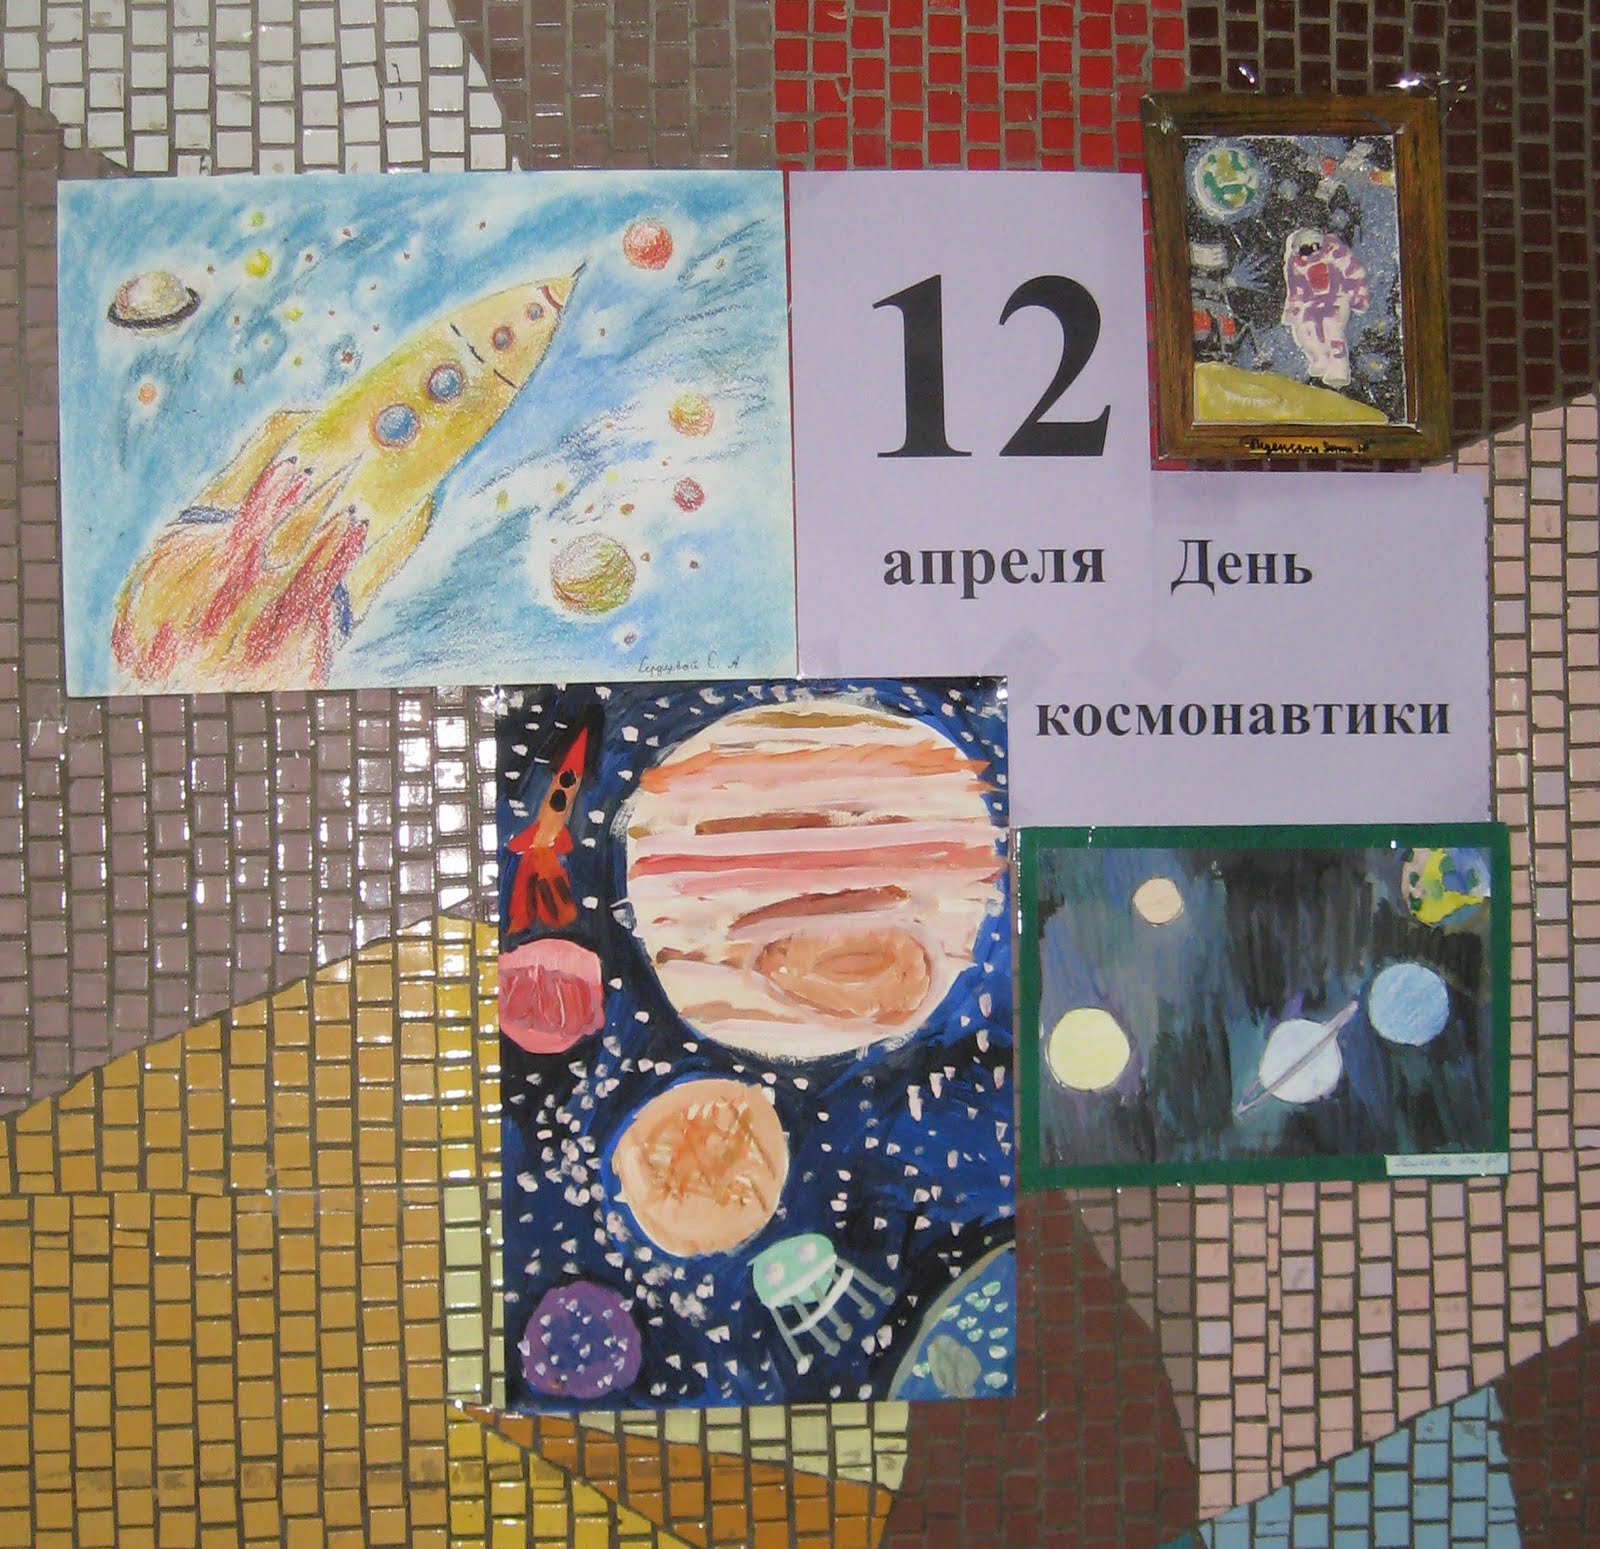 Мероприятие ко дню космонавтики в детском саду. Плакат "день космонавтики". Выставка день космонавтики в детском. Стенгазета ко Дню космонавтики в детском саду.